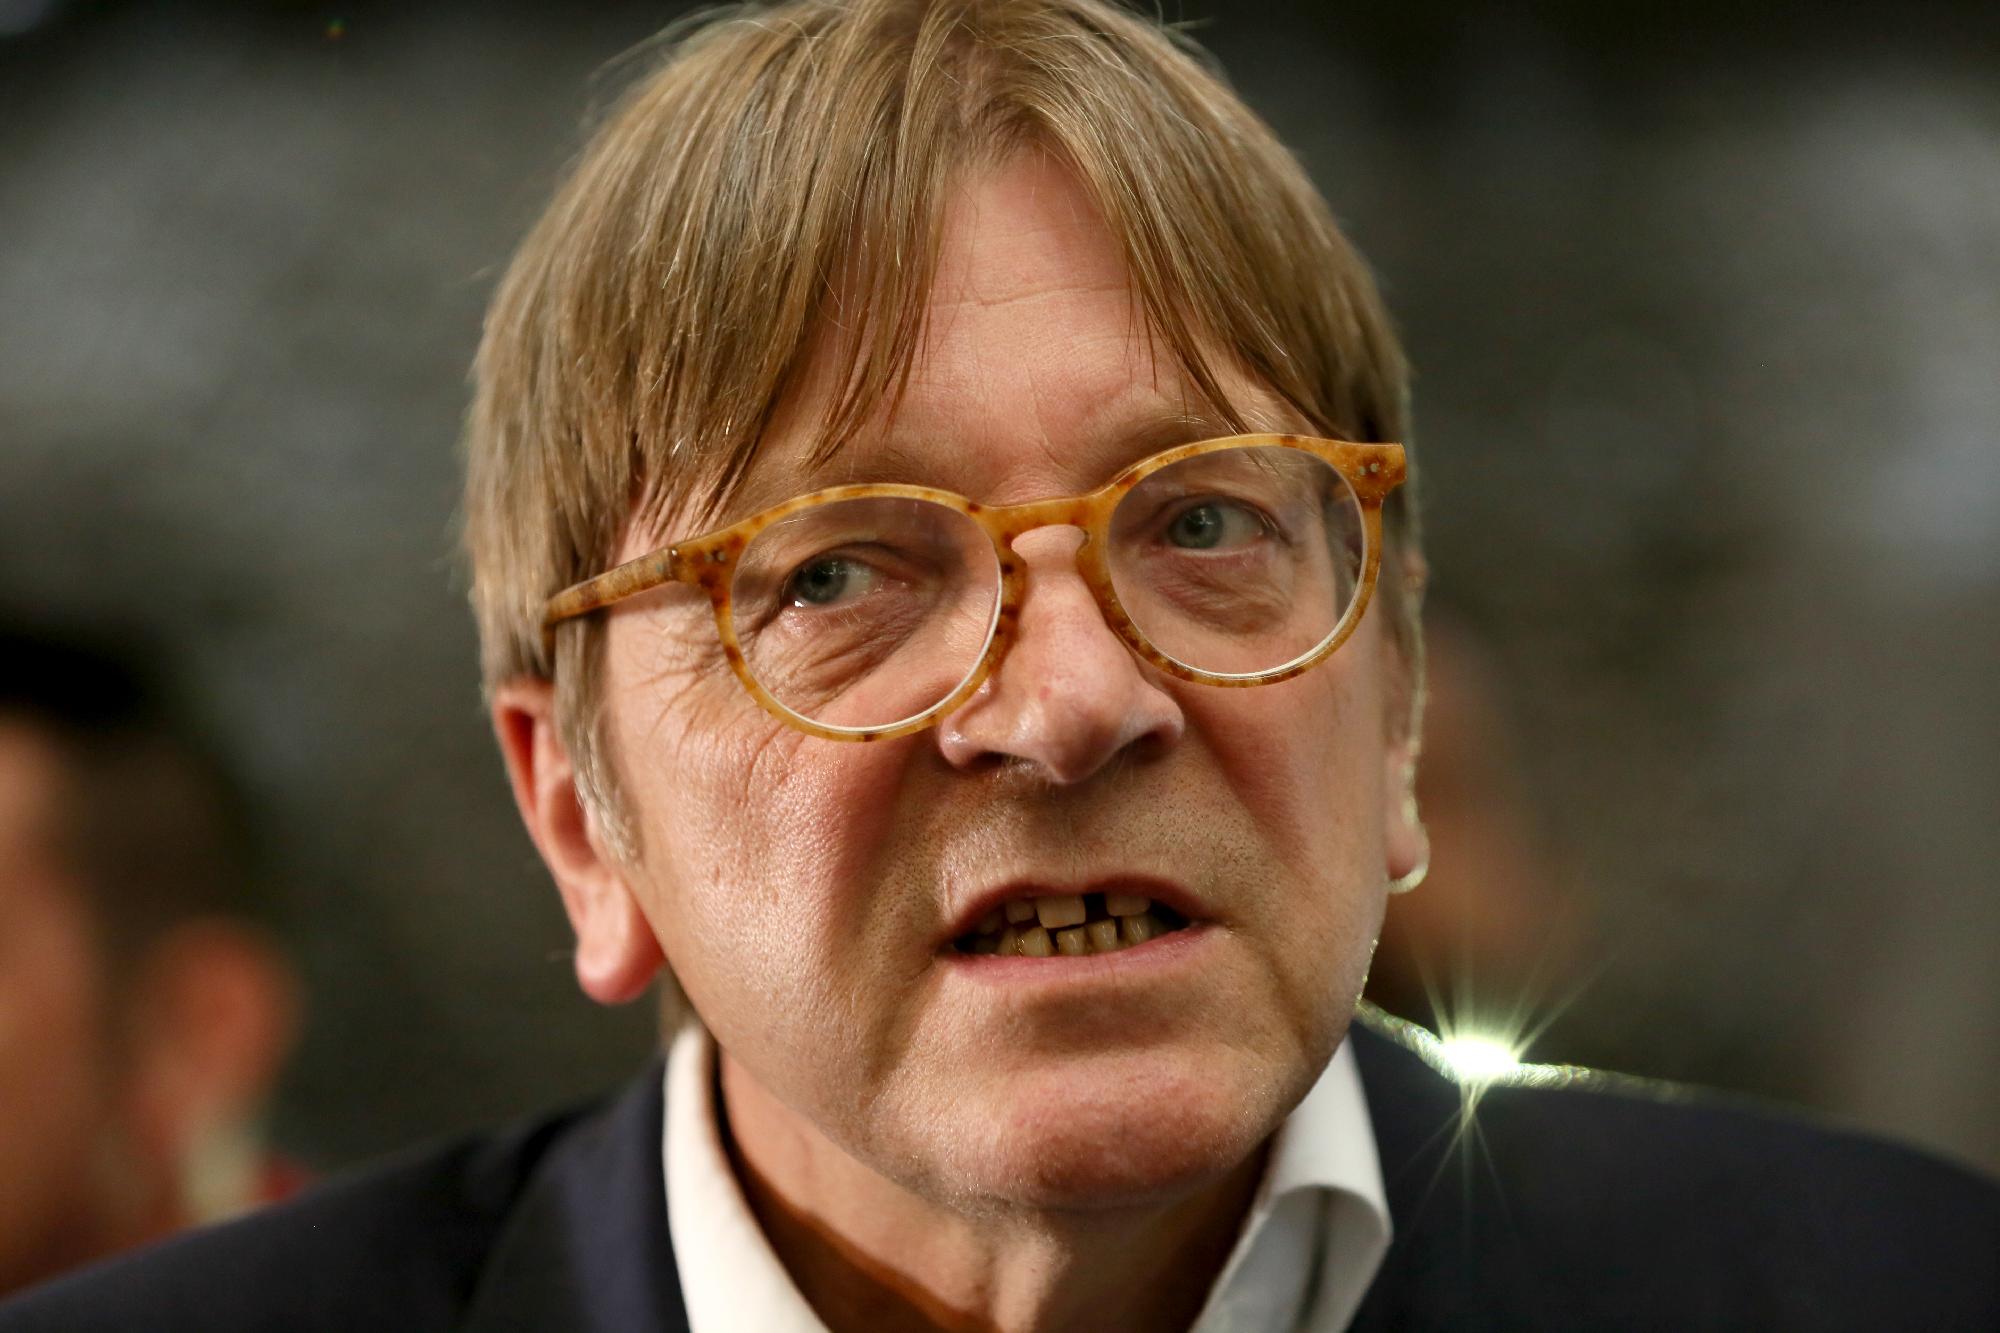 Aktivisták zavarták meg a liberális Guy Verhofstadt budapesti sajtótájékoztatóját